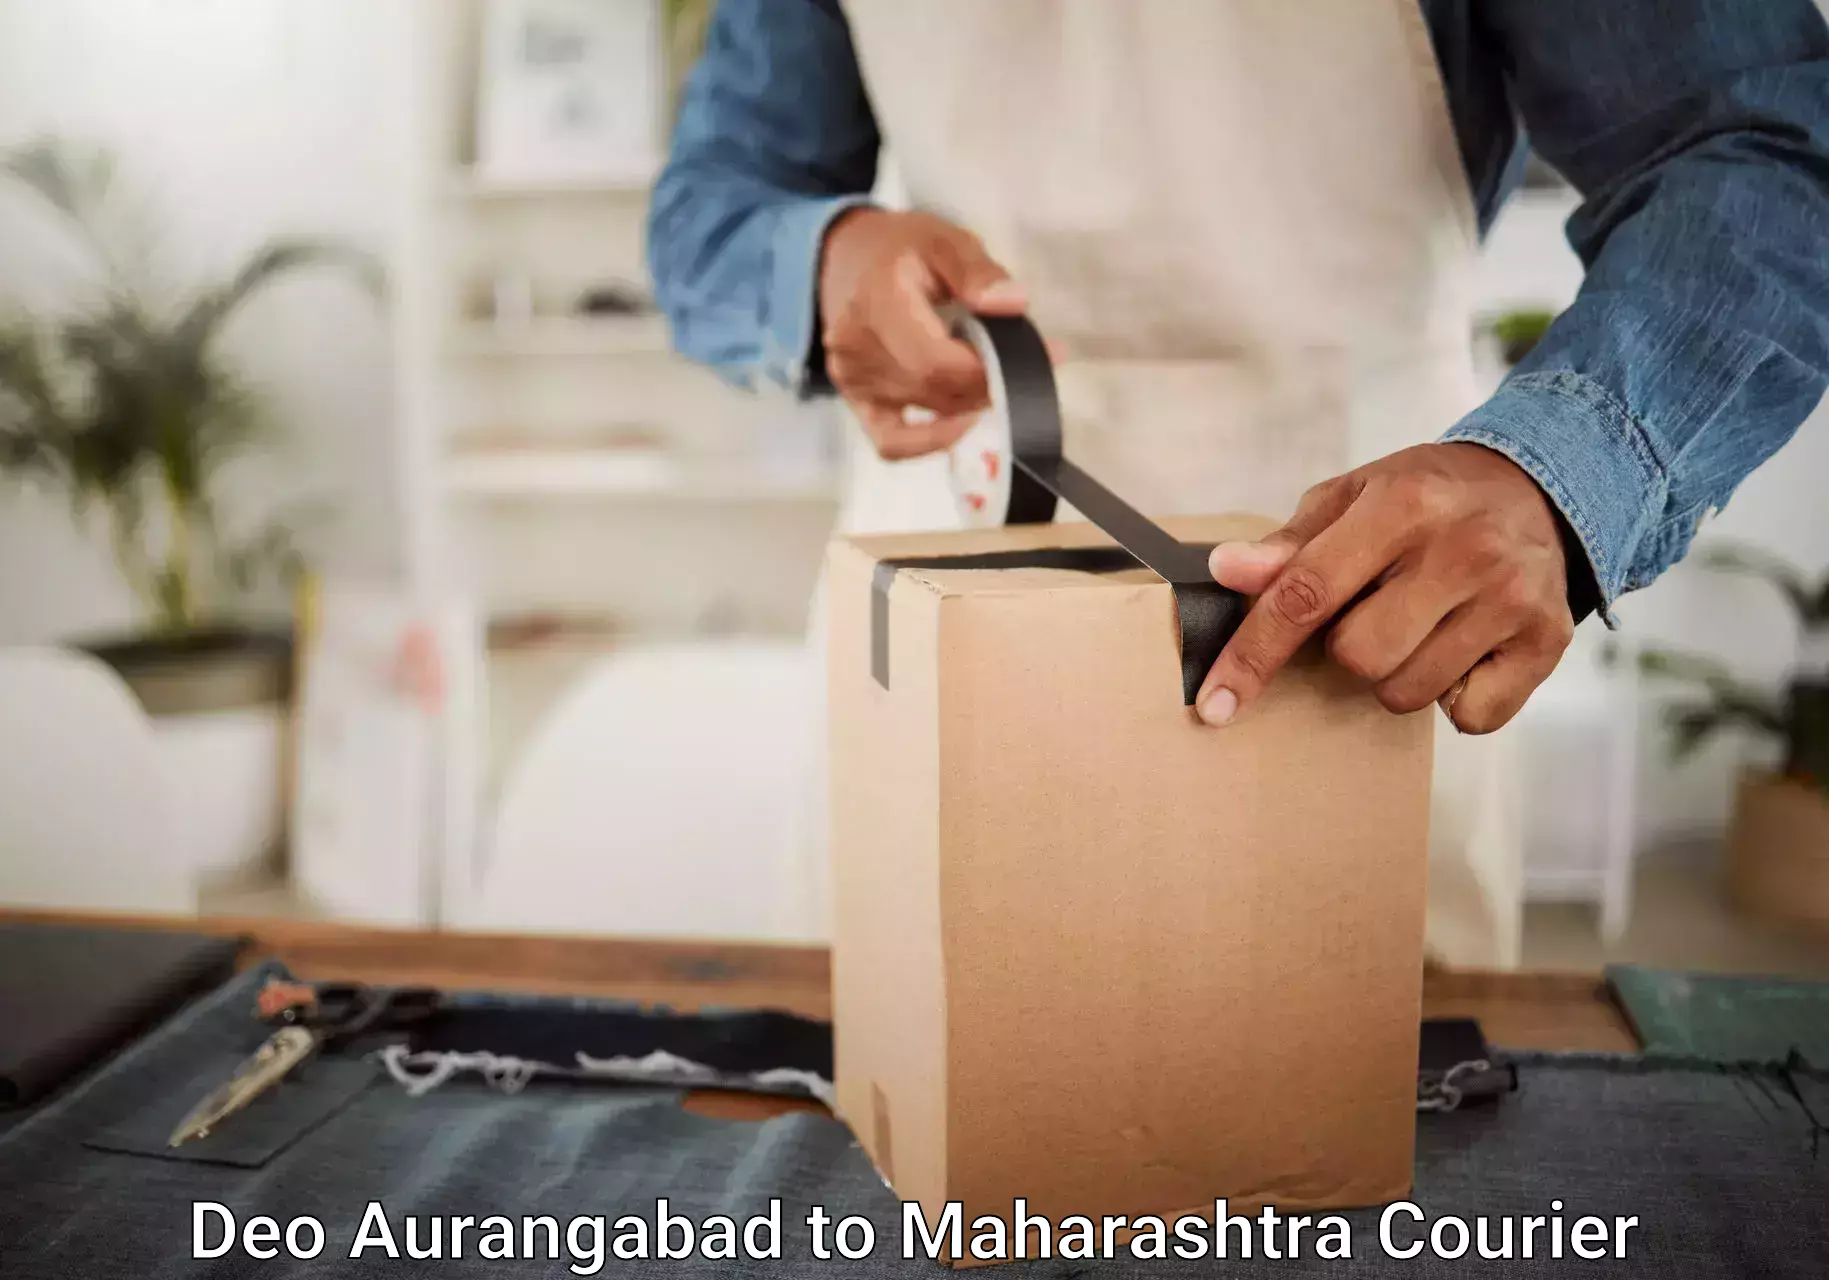 Luggage transport service Deo Aurangabad to Maharashtra